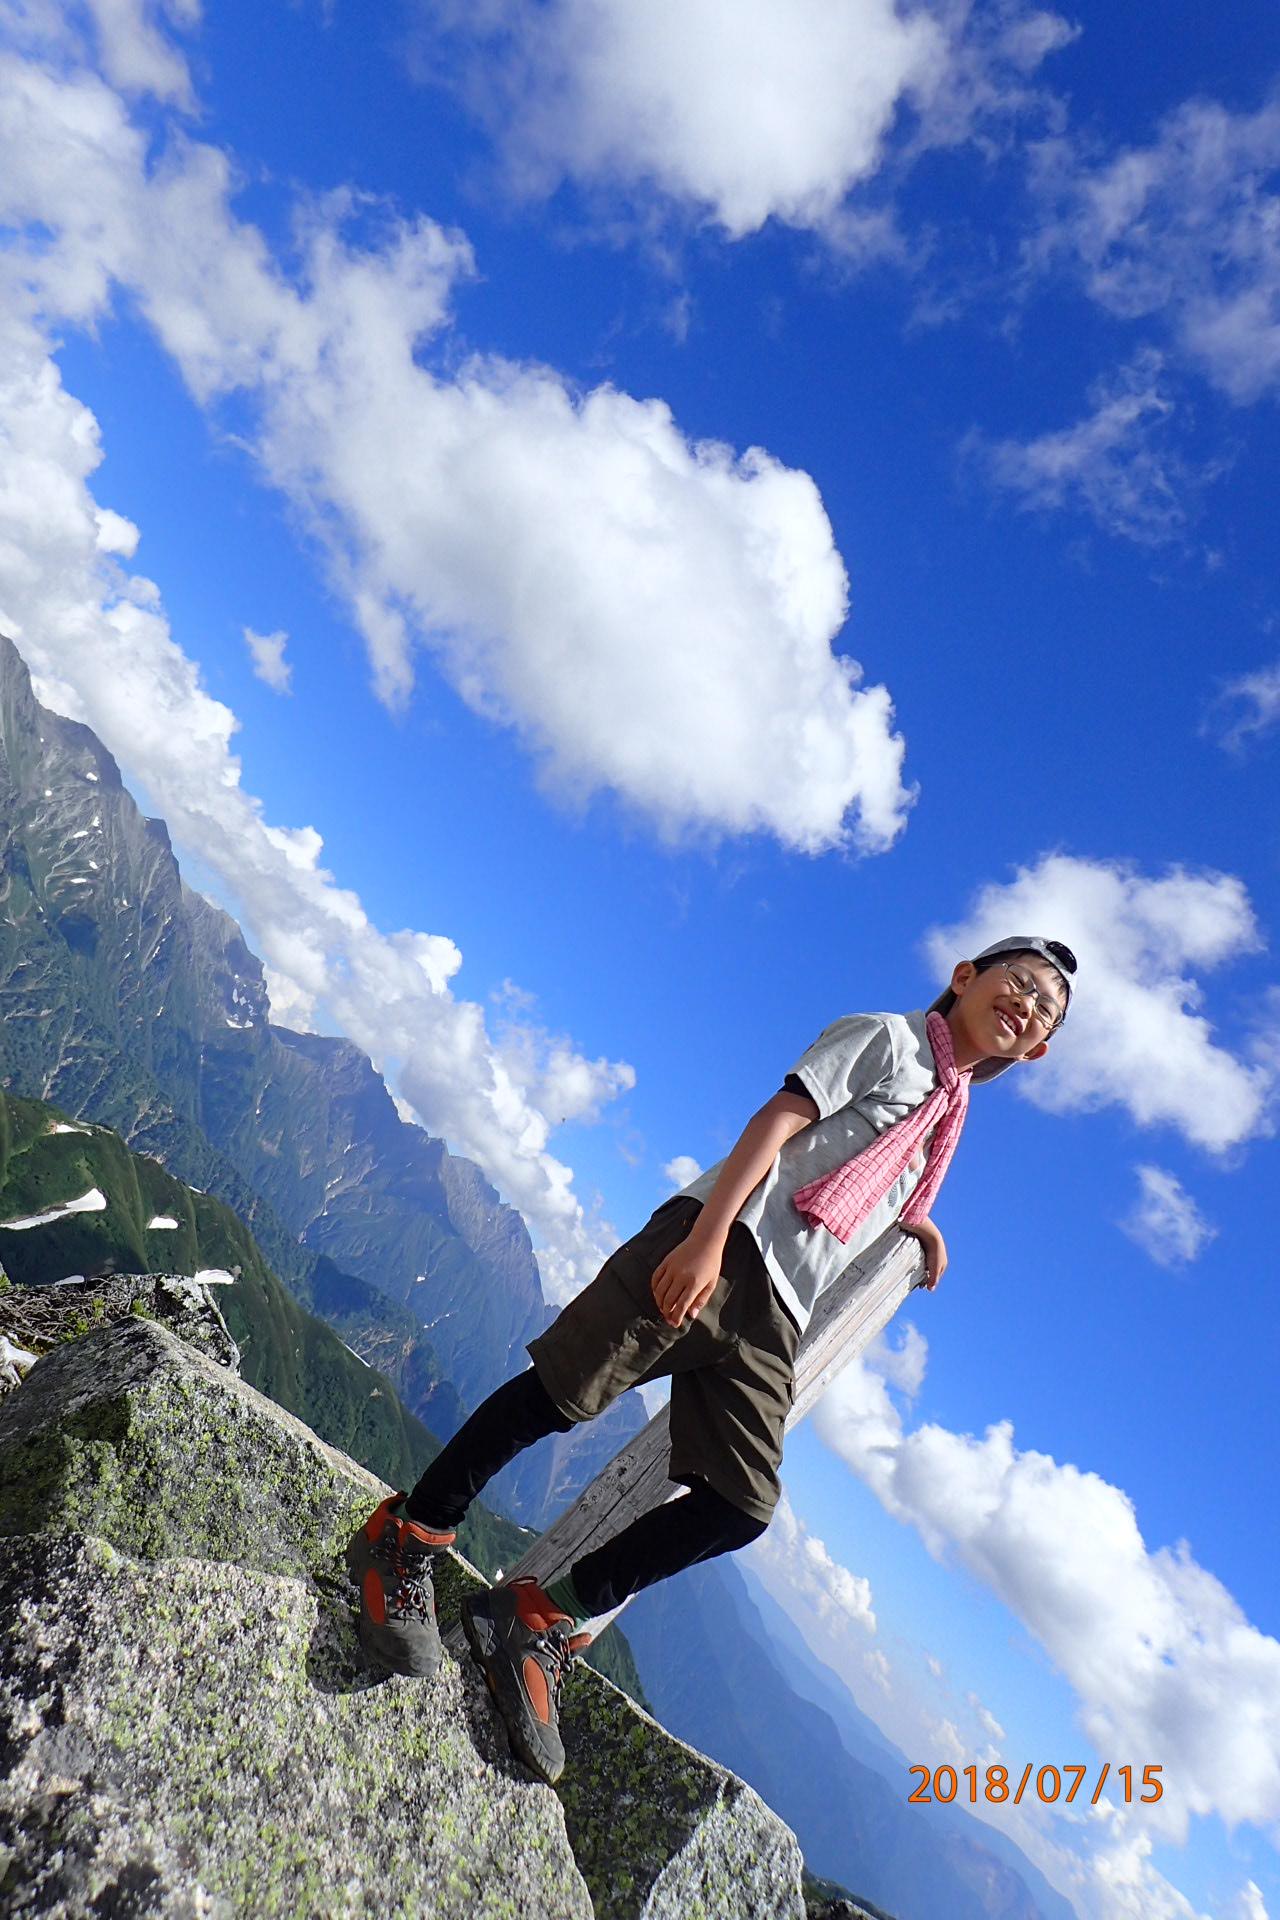 飛騨から登る北アルプスフォトコンテスト 受賞作品発表 山の写真大募集 Yamakei Online 山と渓谷社